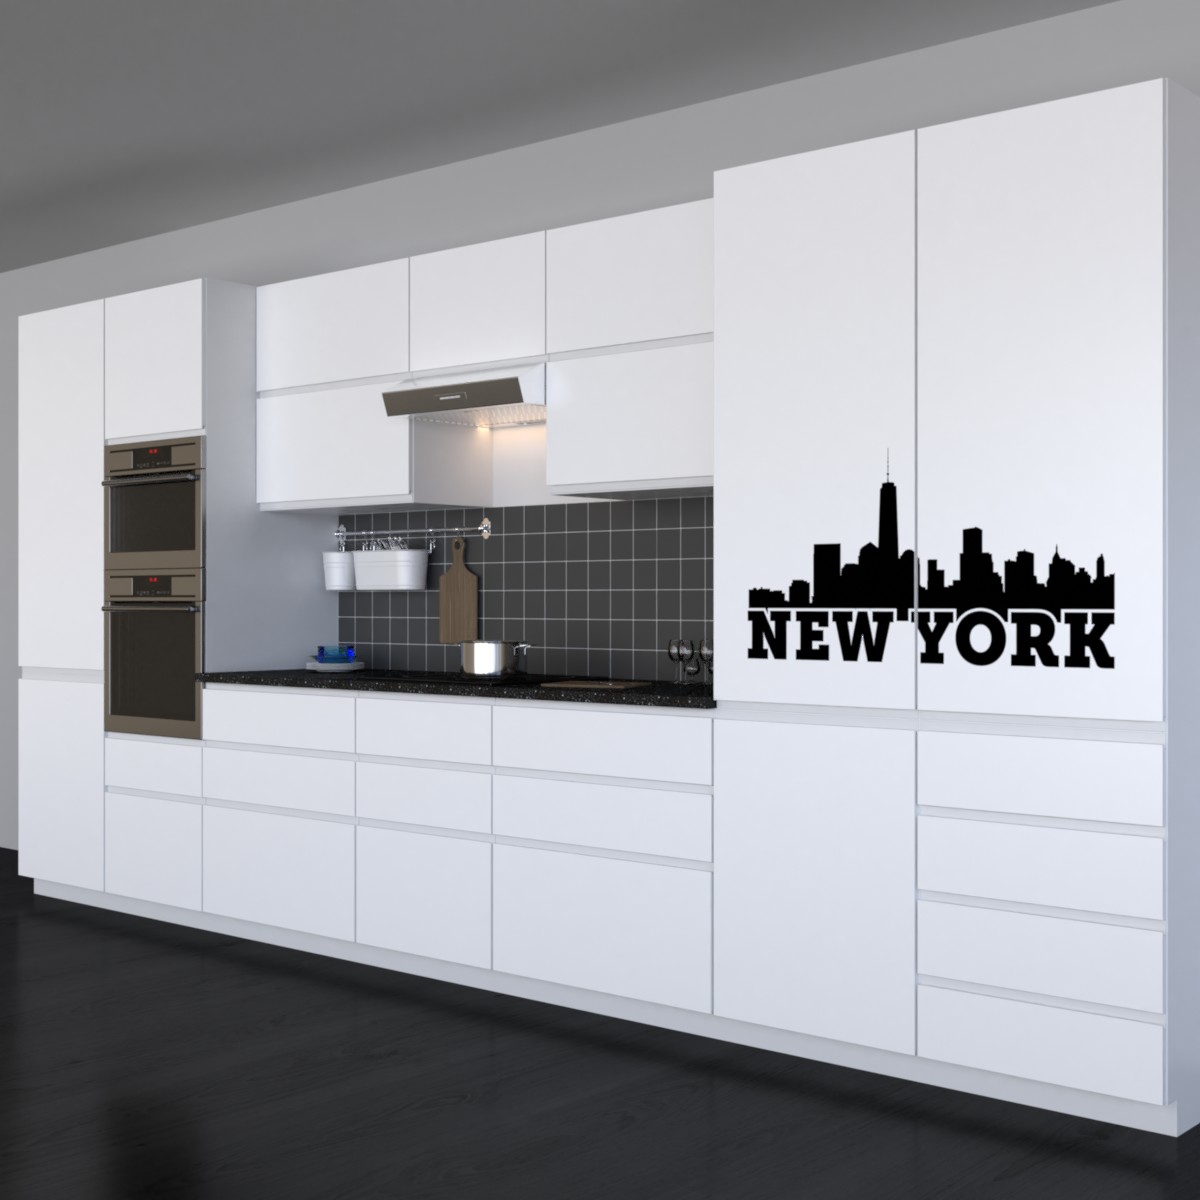 New York Sykline Küchenfront Küchenfolie Küchenaufkleber Ansicht3